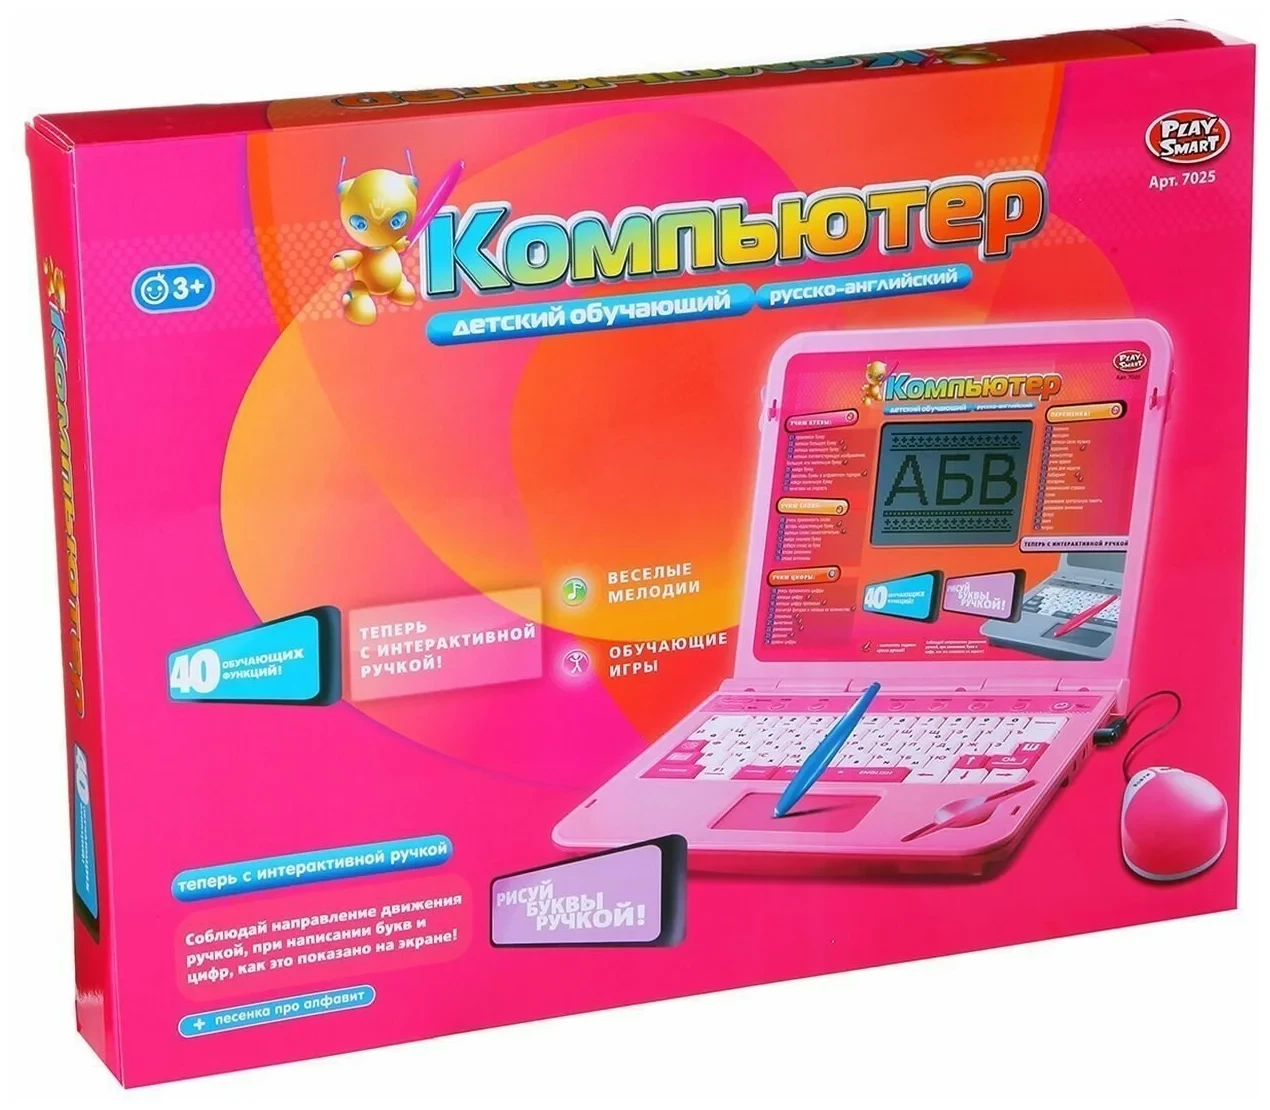 Детский обучающий компьютер ноутбук Play Smart (Joy Toy) 7025 стилус, большой экран,розовый